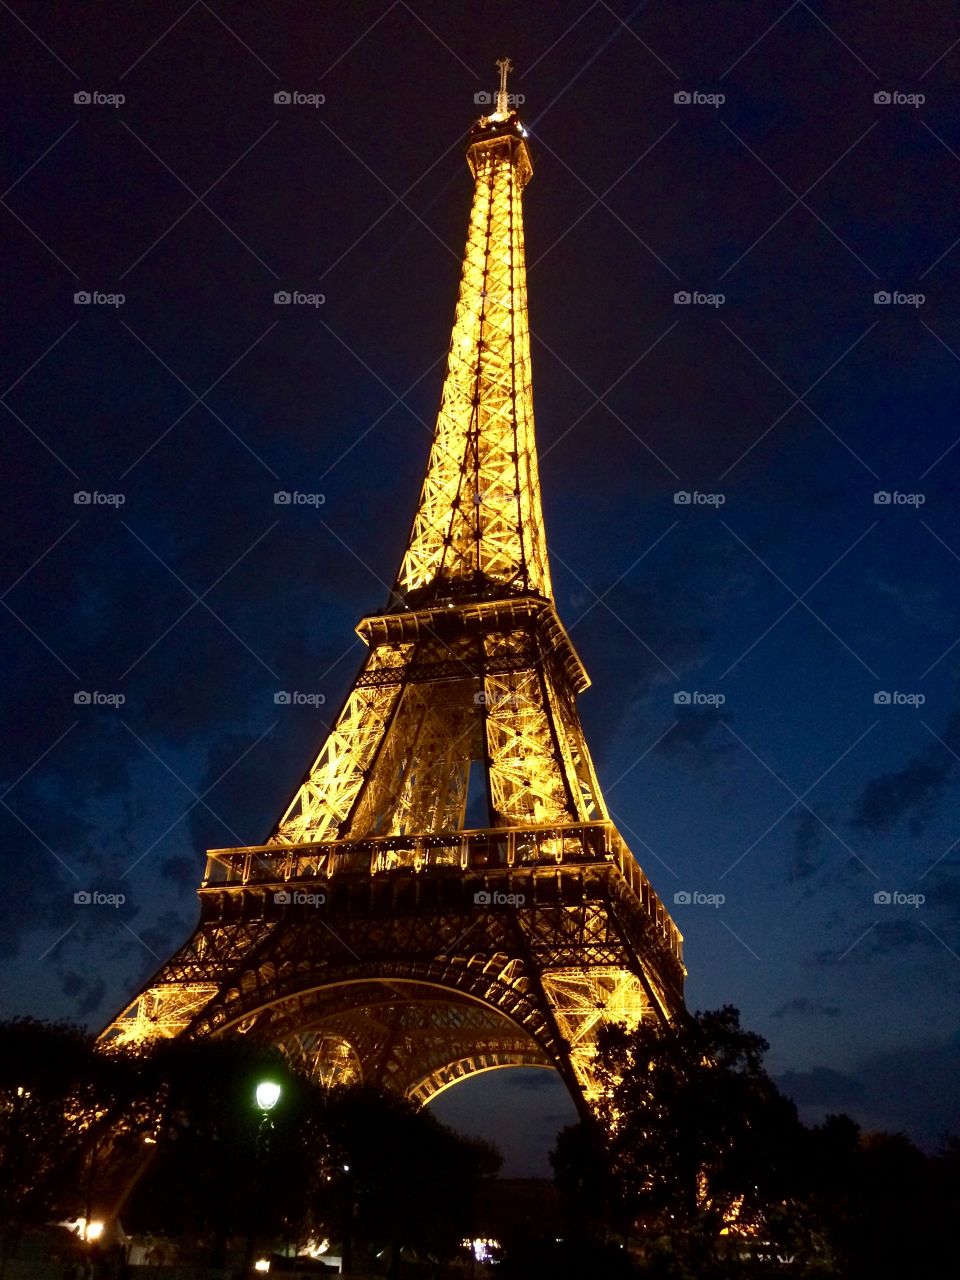 Eiffel tower by night, Paris, France